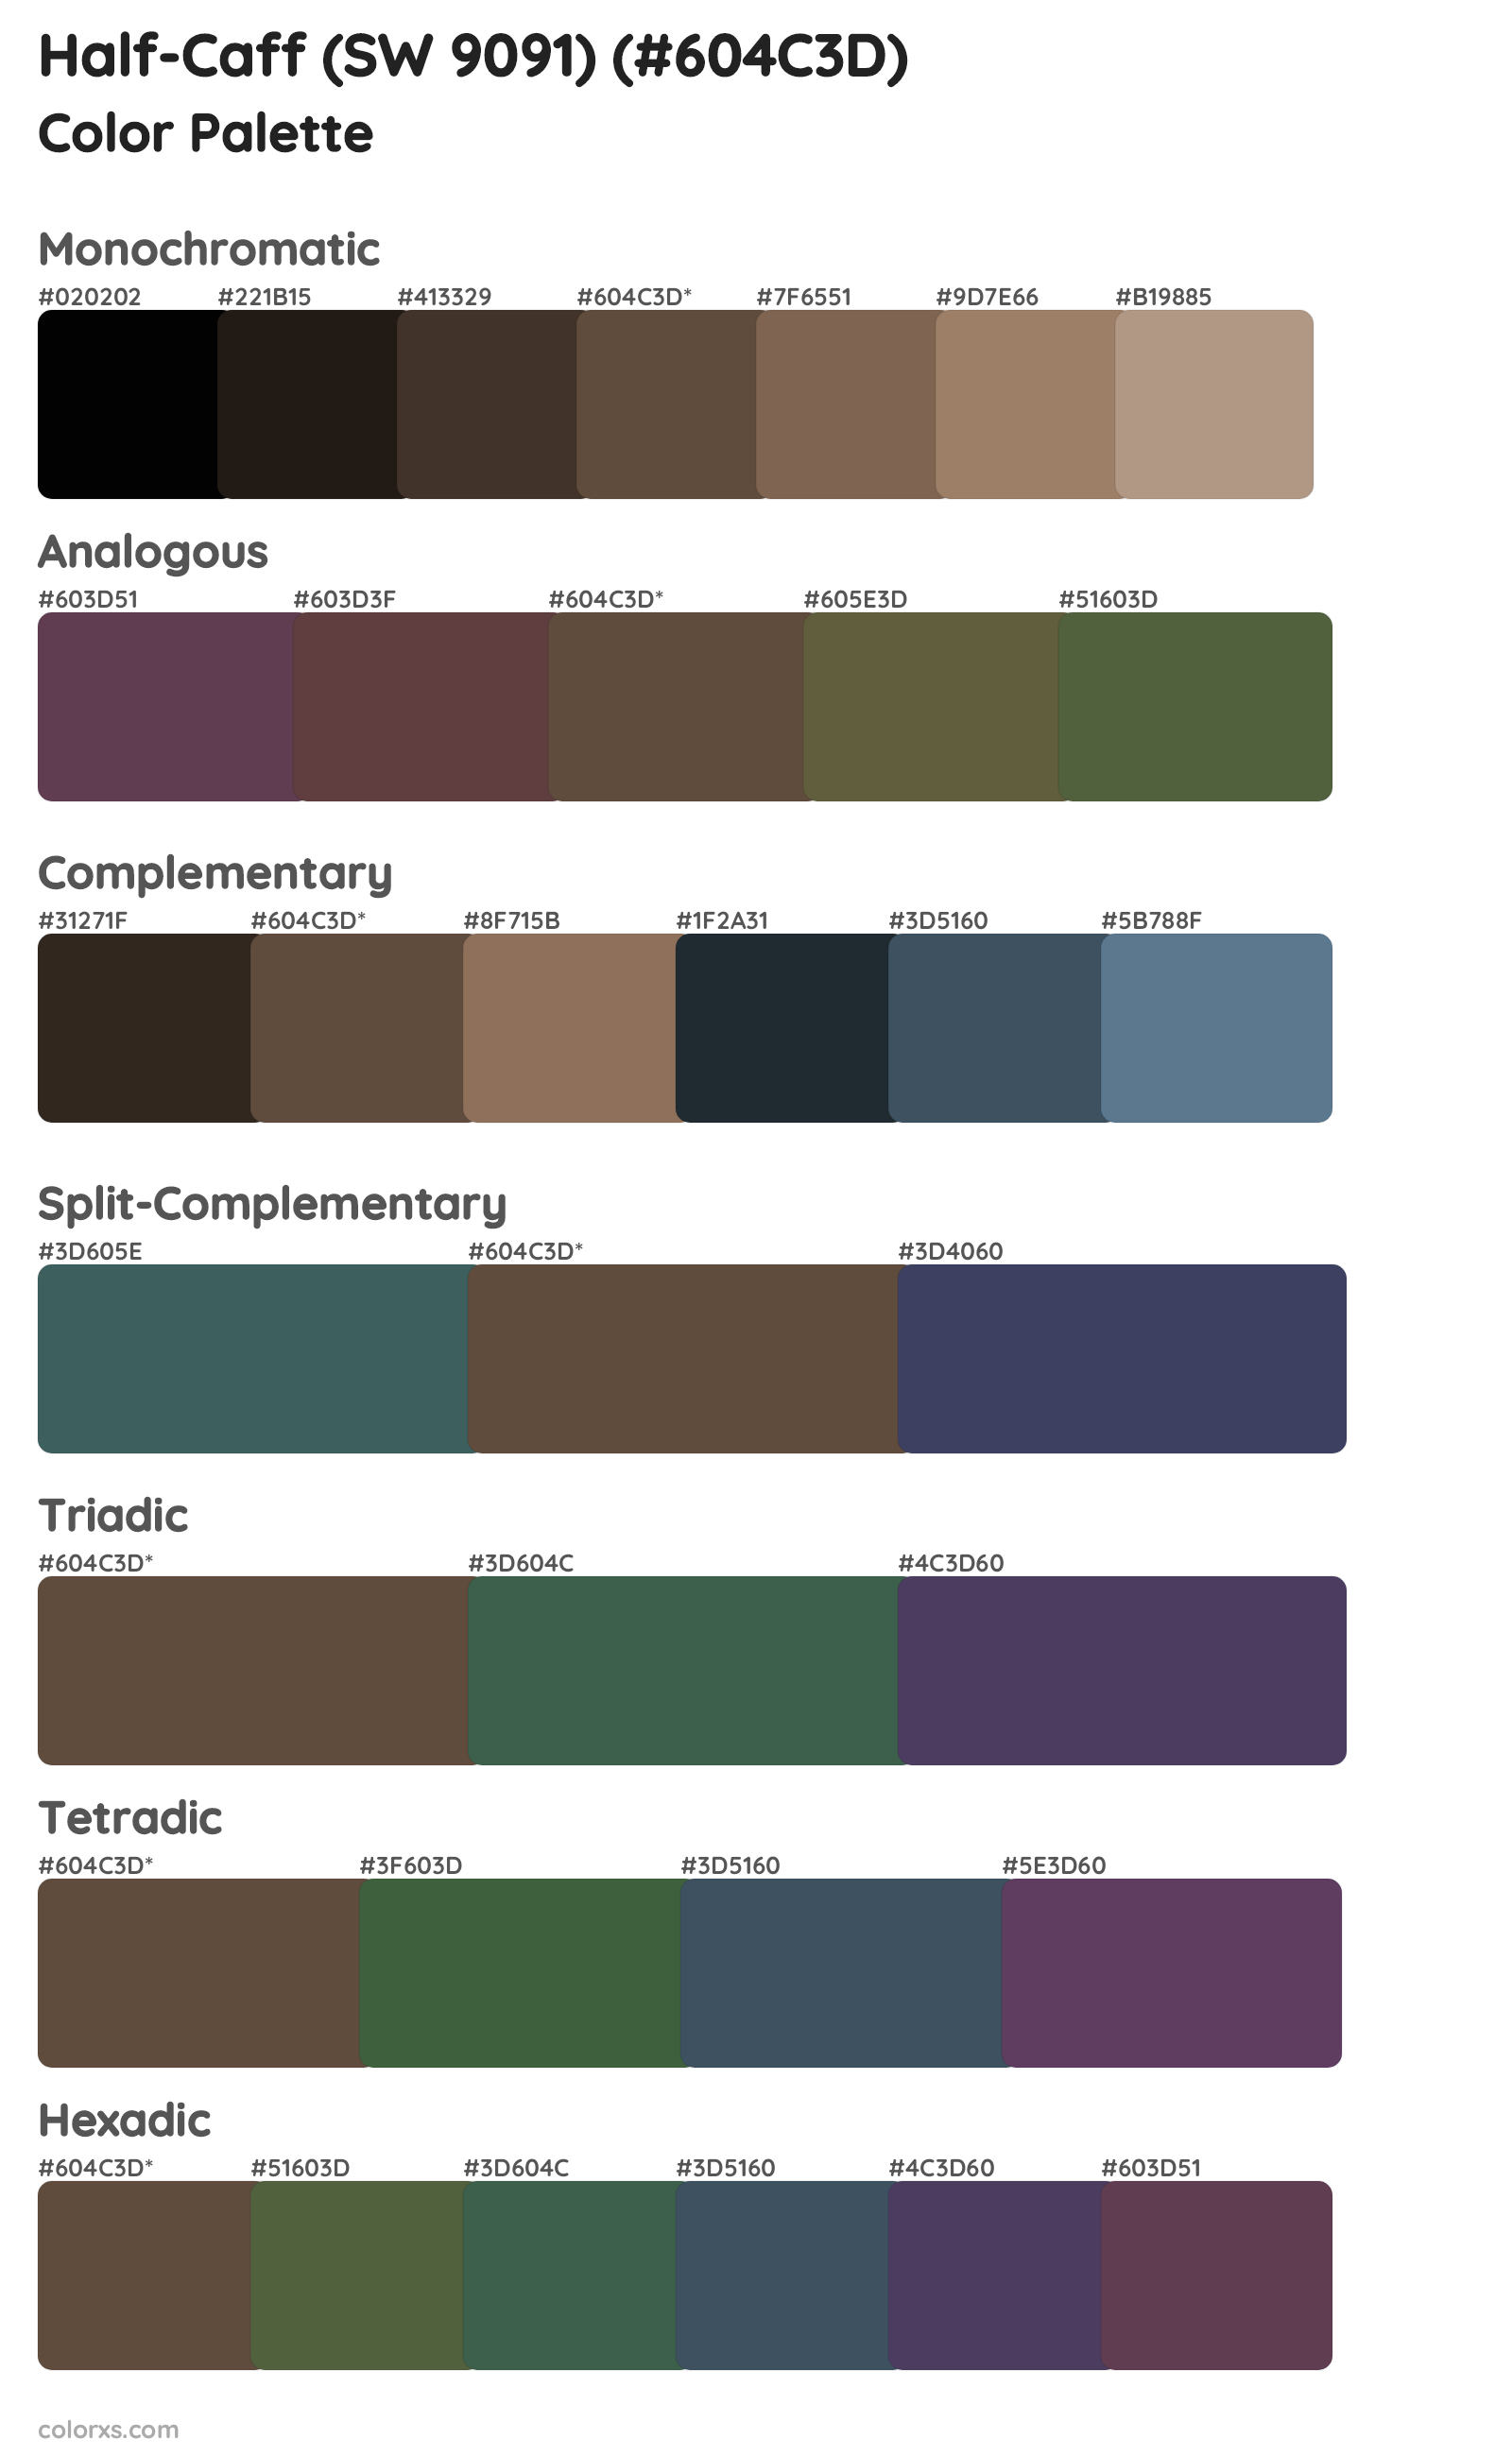 Half-Caff (SW 9091) Color Scheme Palettes